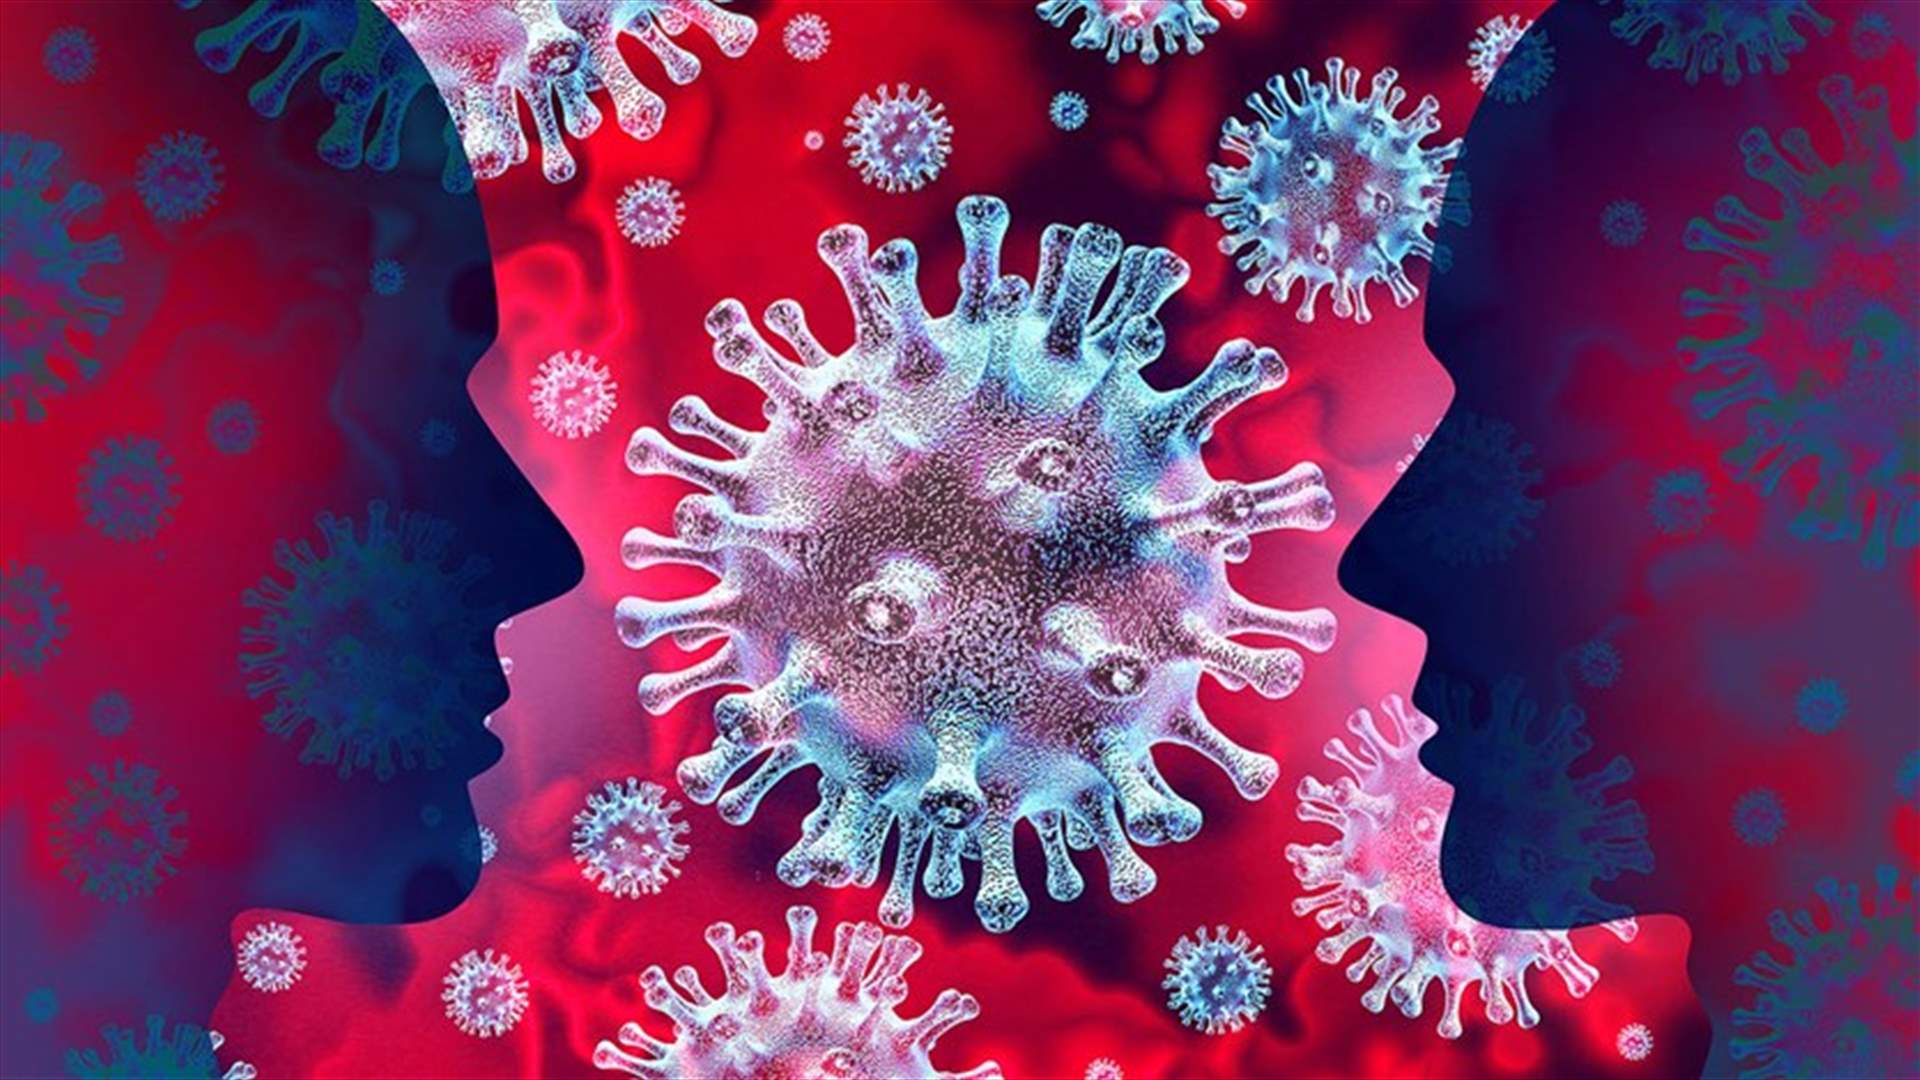 علماء يحذرون... فيروس كورونا قد يتسبب بانخفاض متوسط العمر المتوقع في مناطق عديدة